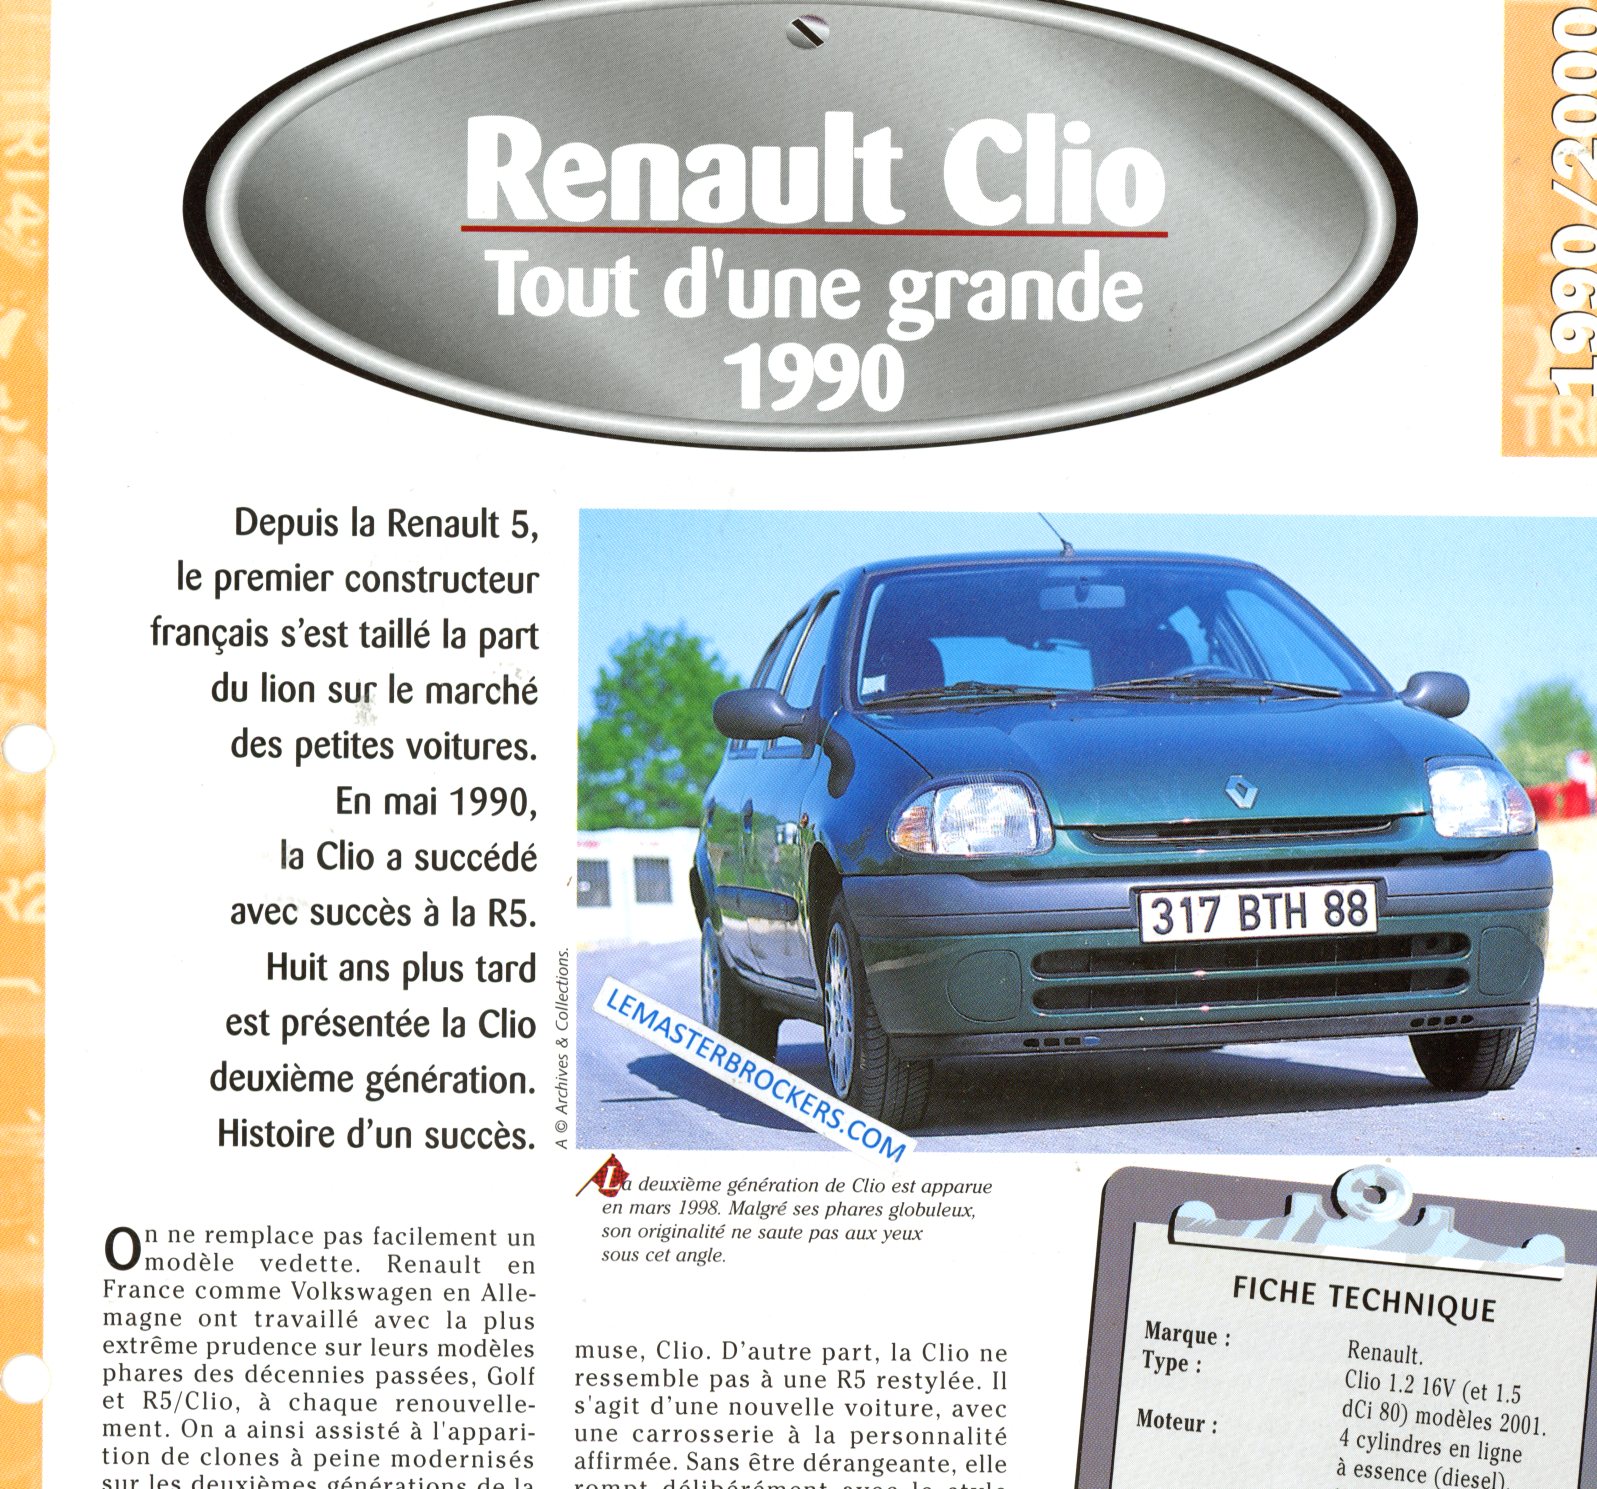 RENAULT CLIO 1990 FICHE TECHNIQUE 1.2  16V ET 1.5 DCI 80